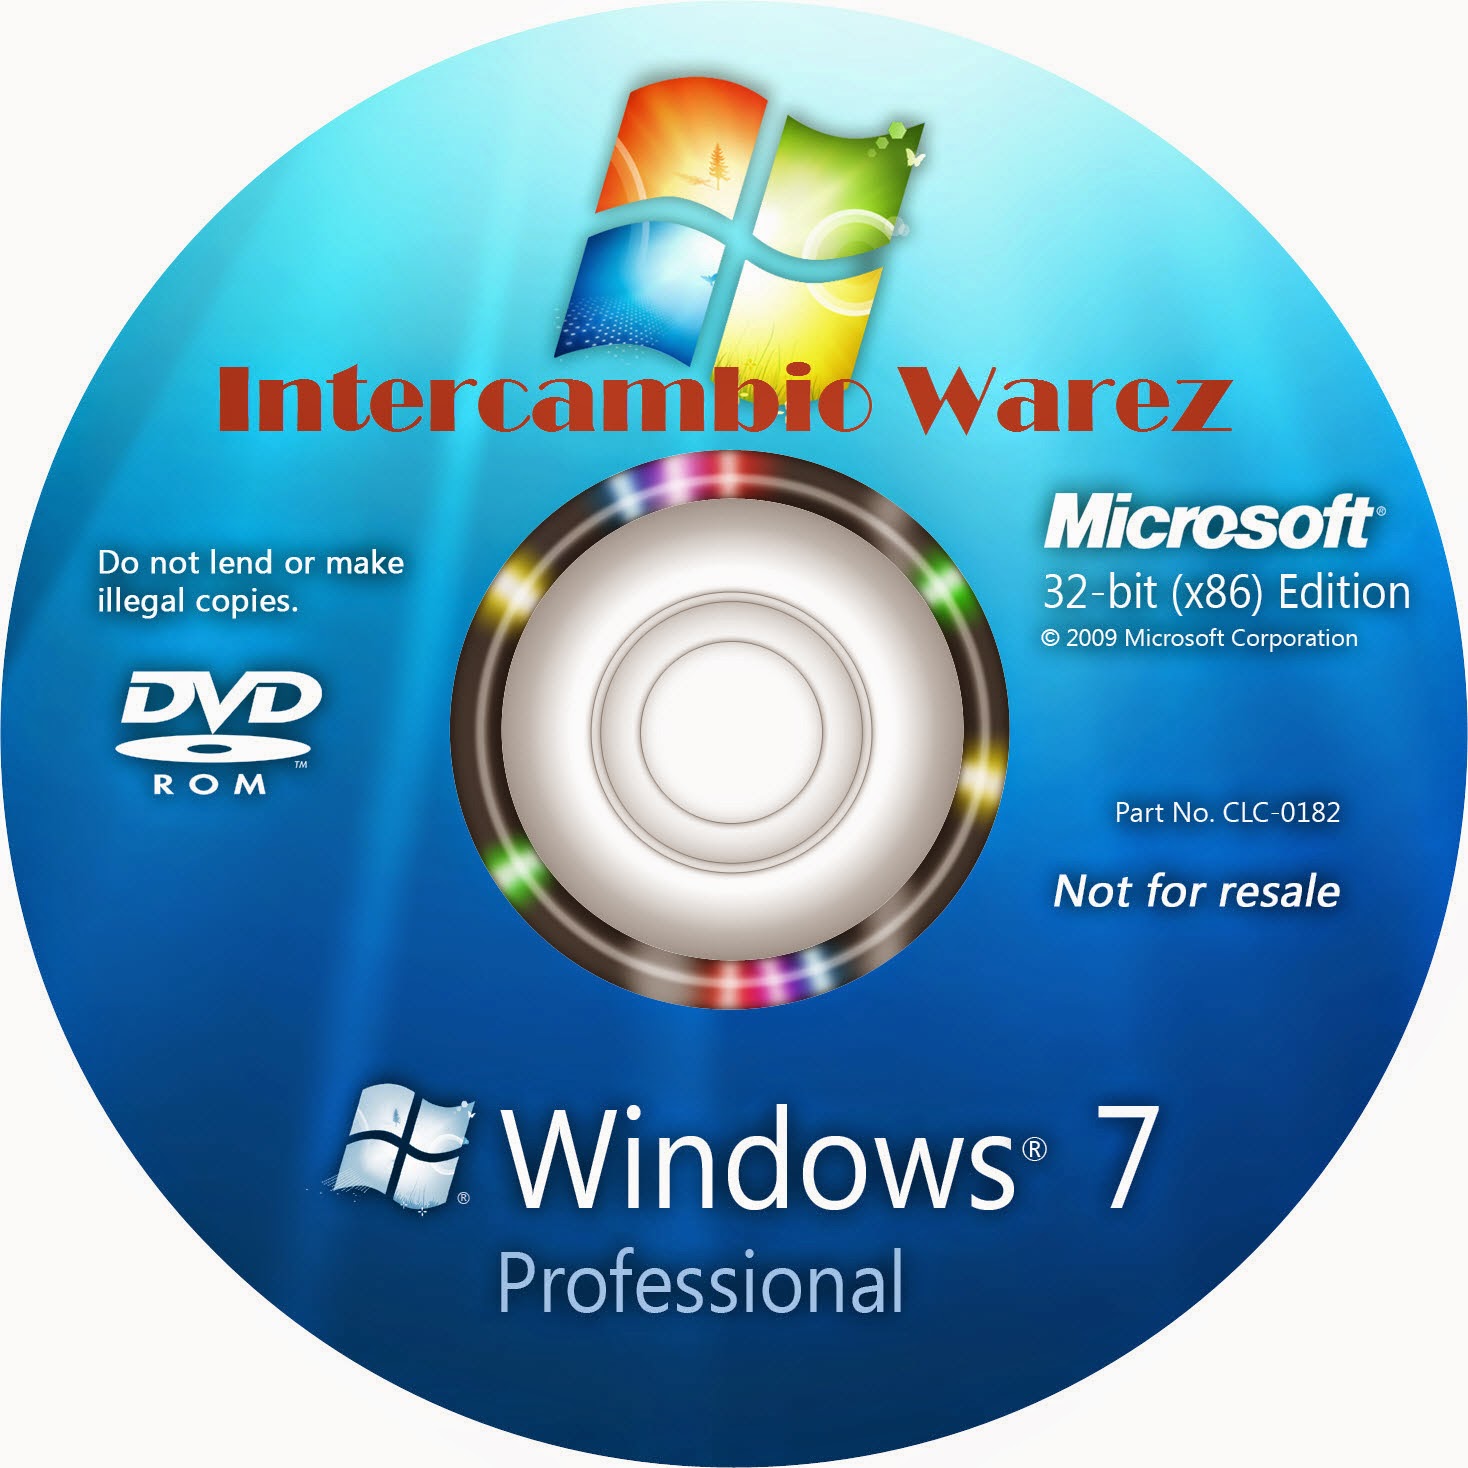 Trial Windows 7 Home Premium